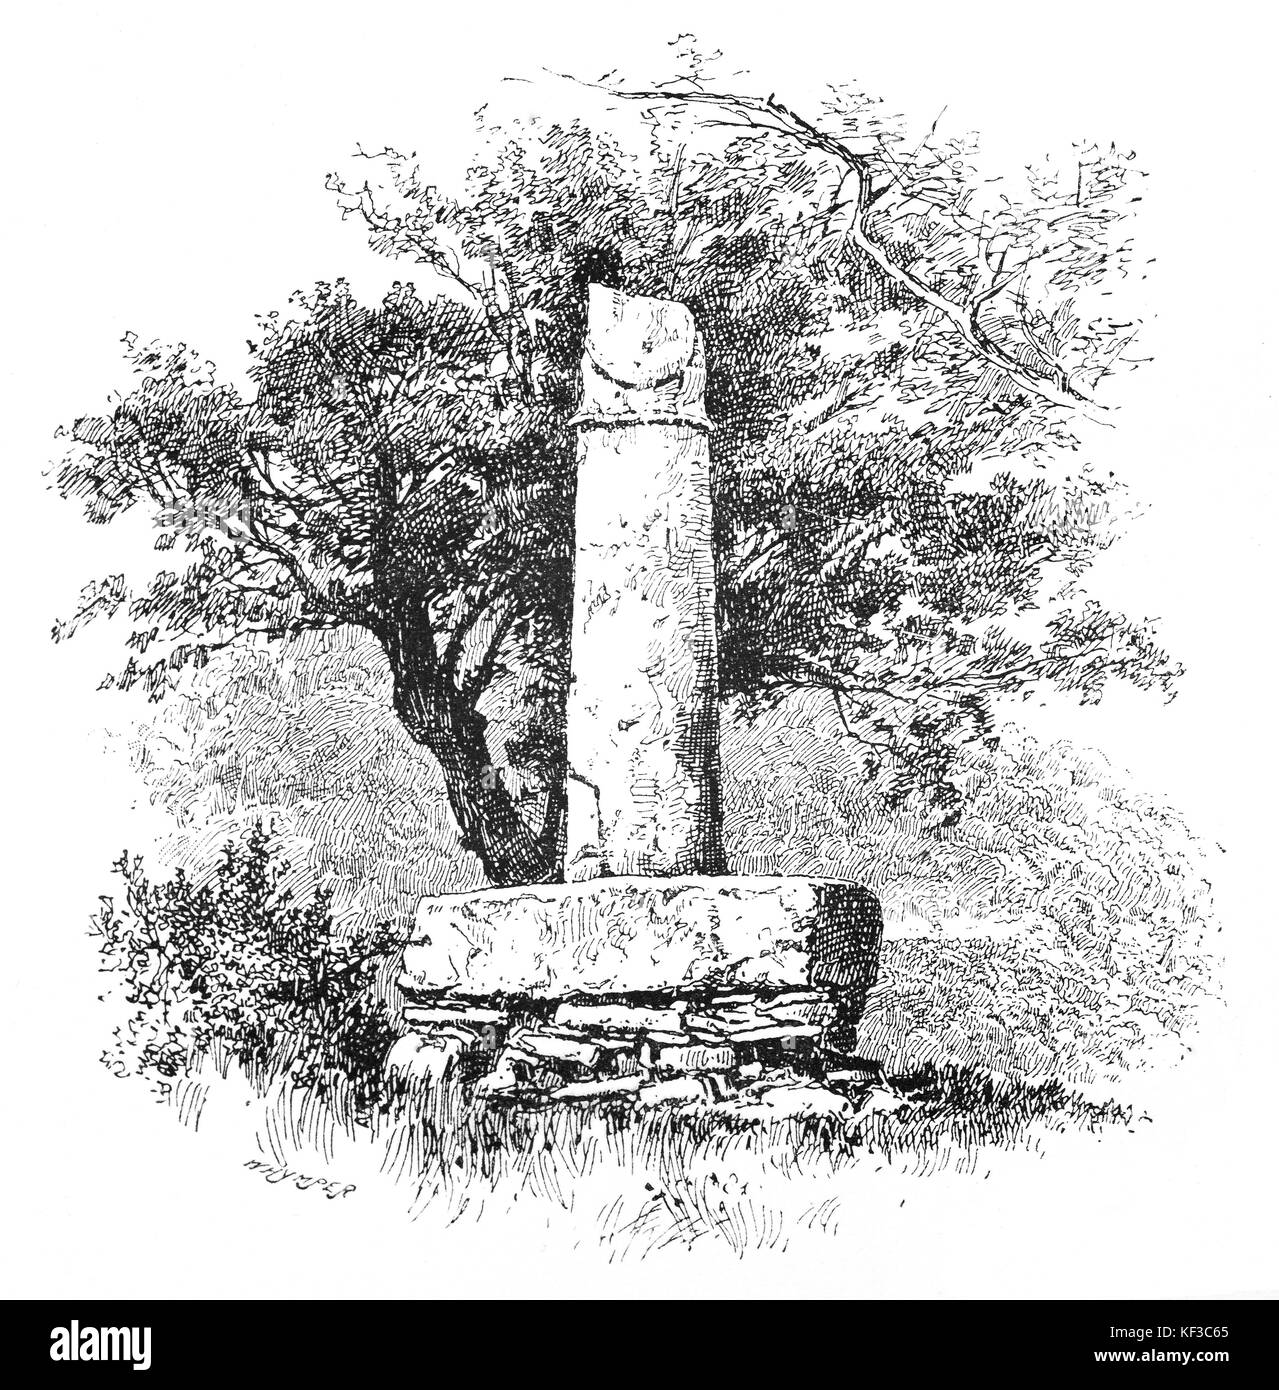 1890 : le pilier d'Eliseg, également appelé pilier d'Elise ou Croes Elisedd, se trouve près de l'abbaye de Valle Crucis, Denbighshire, Pays de Galles. Il a été érigé par Cyngen ap Cadell (mort 855), roi de Powys en l'honneur de son grand-père Elisedd ap Gwylog au IXe siècle. Banque D'Images